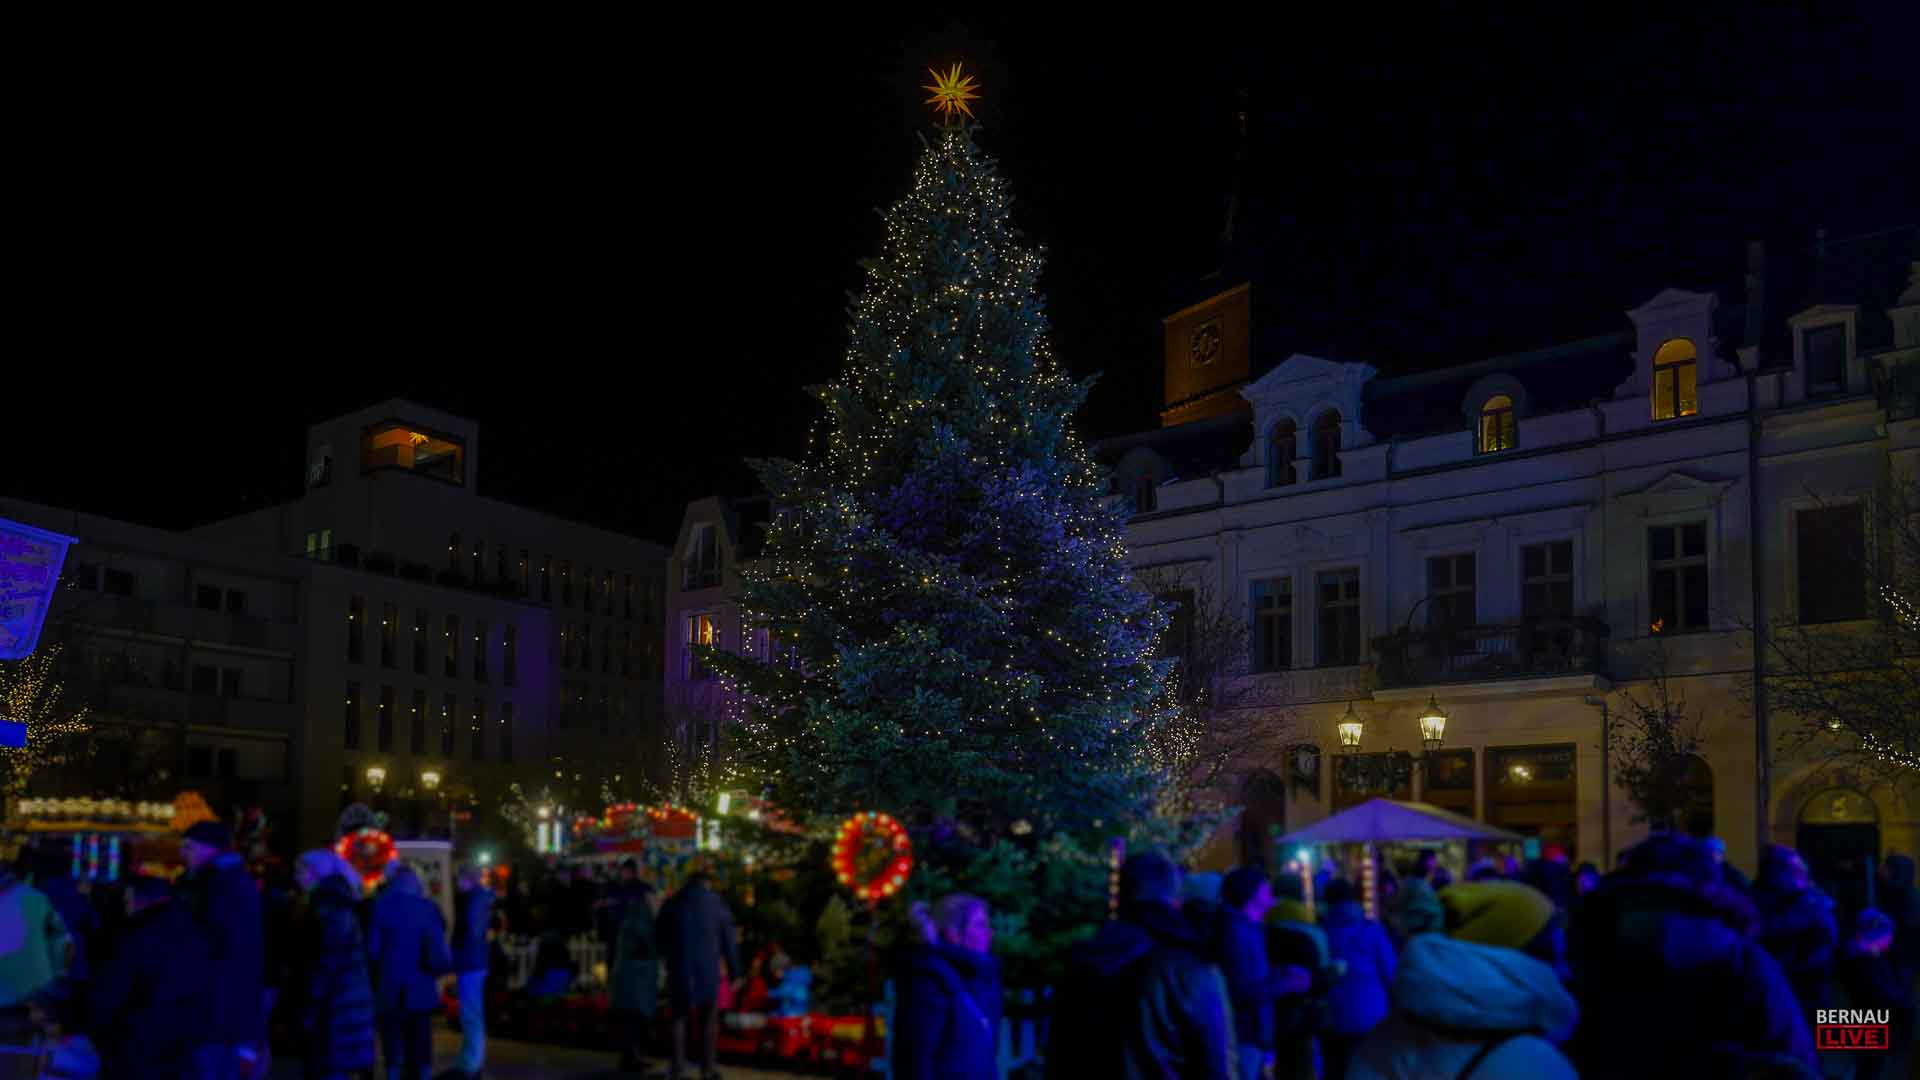 Weihnachtsmarkt: Bernau erhält eine Eisbahn auf dem Marktplatz